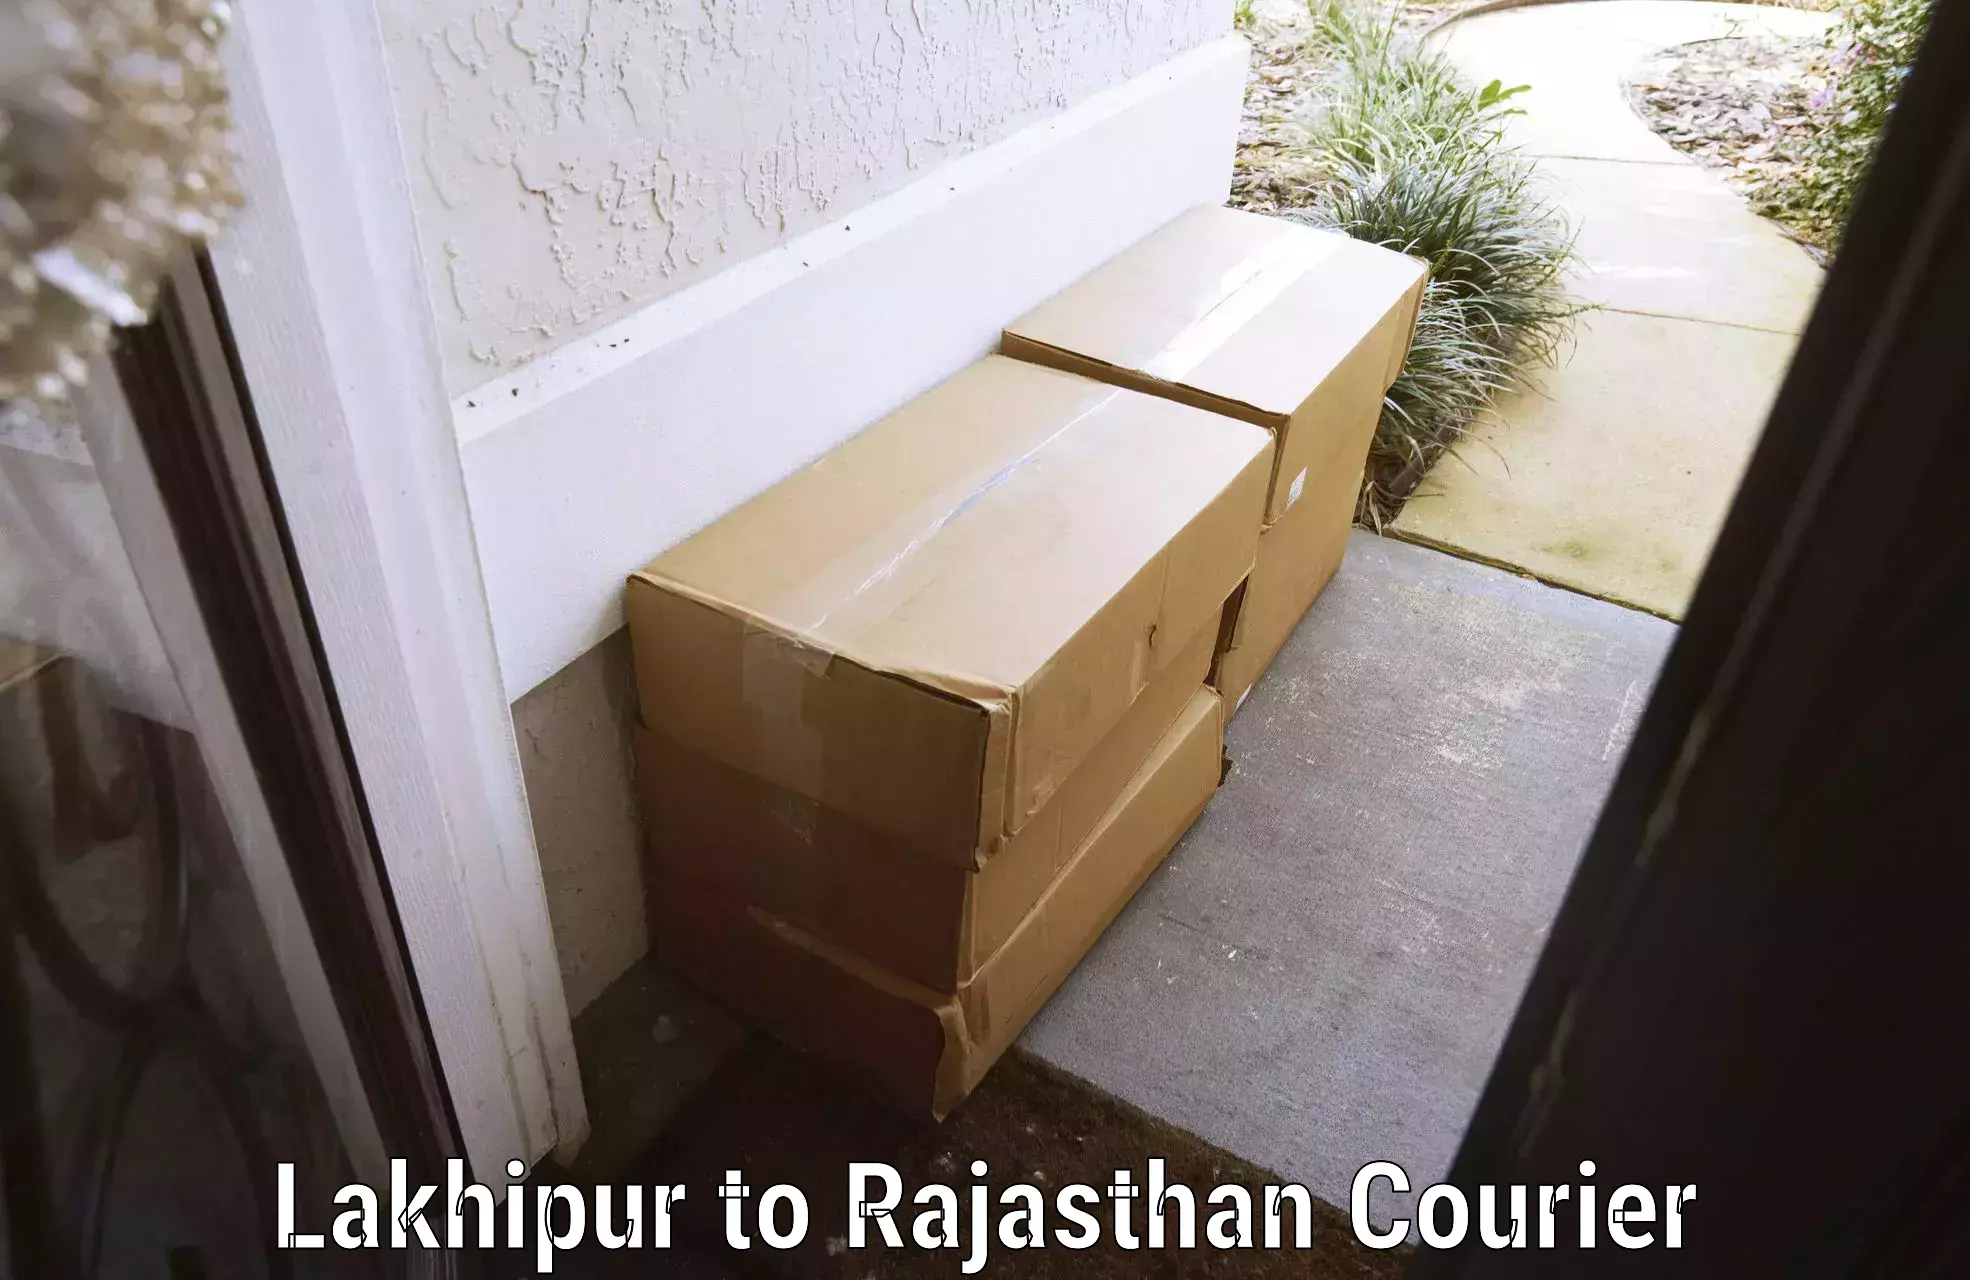 Luggage transport service Lakhipur to Rajasthan